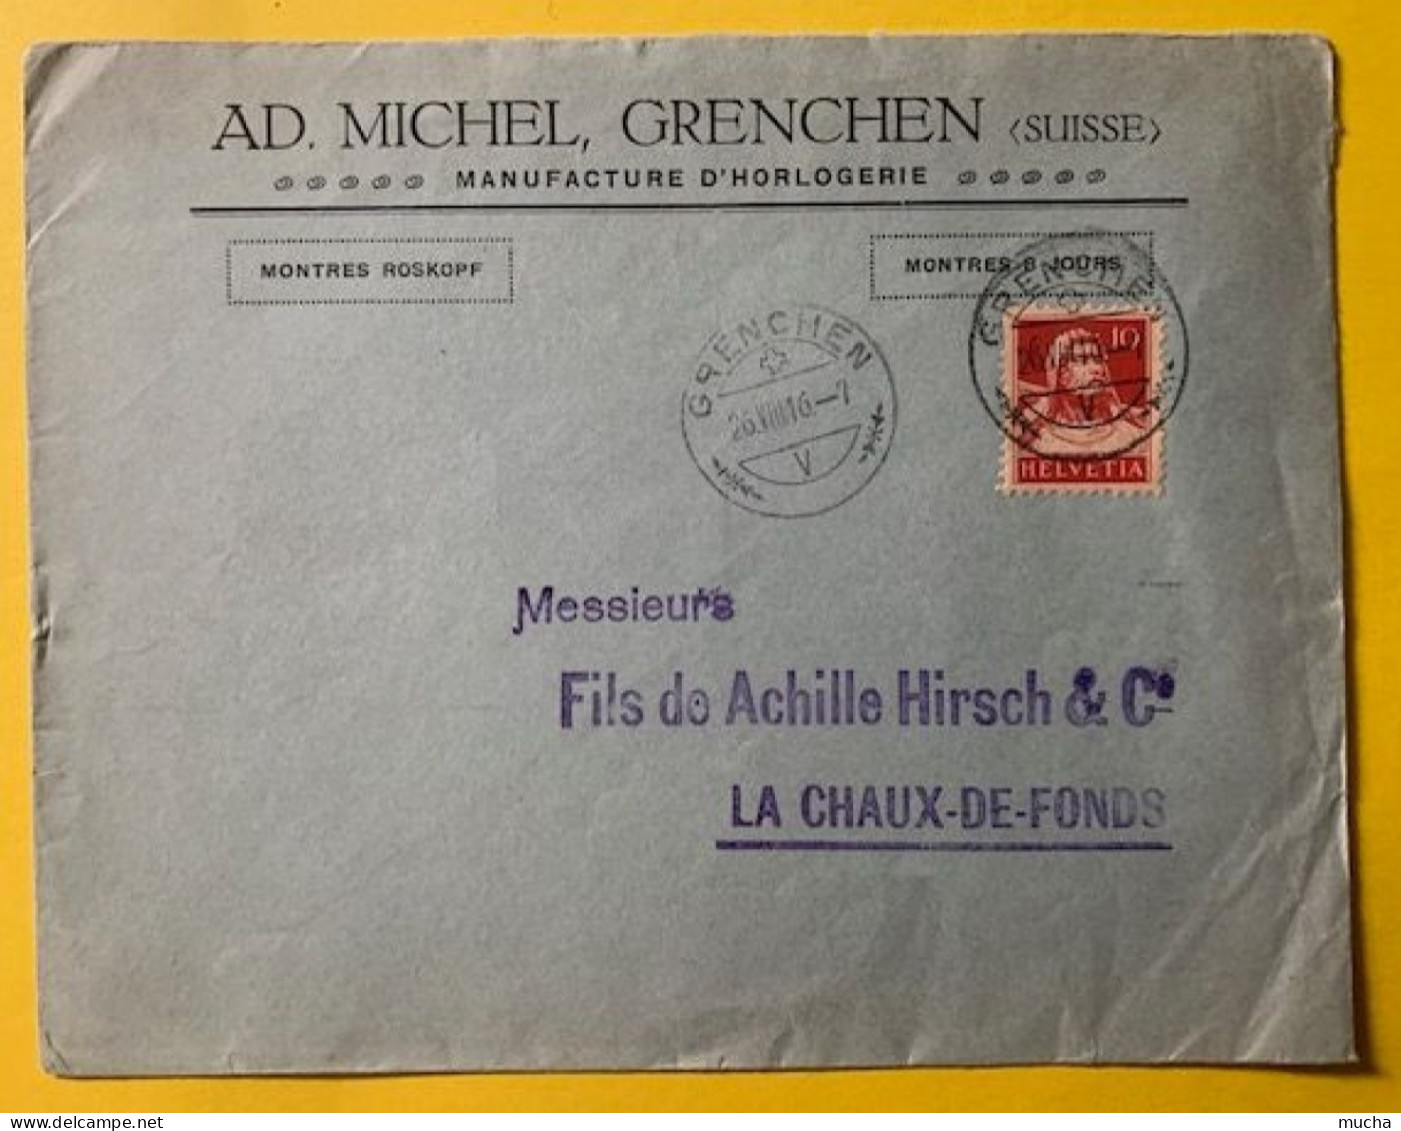 70019 - Suisse Lettre Ad. Michel Manufacture D'Horlogerie Grenchen 26.08.1916 - Horloges